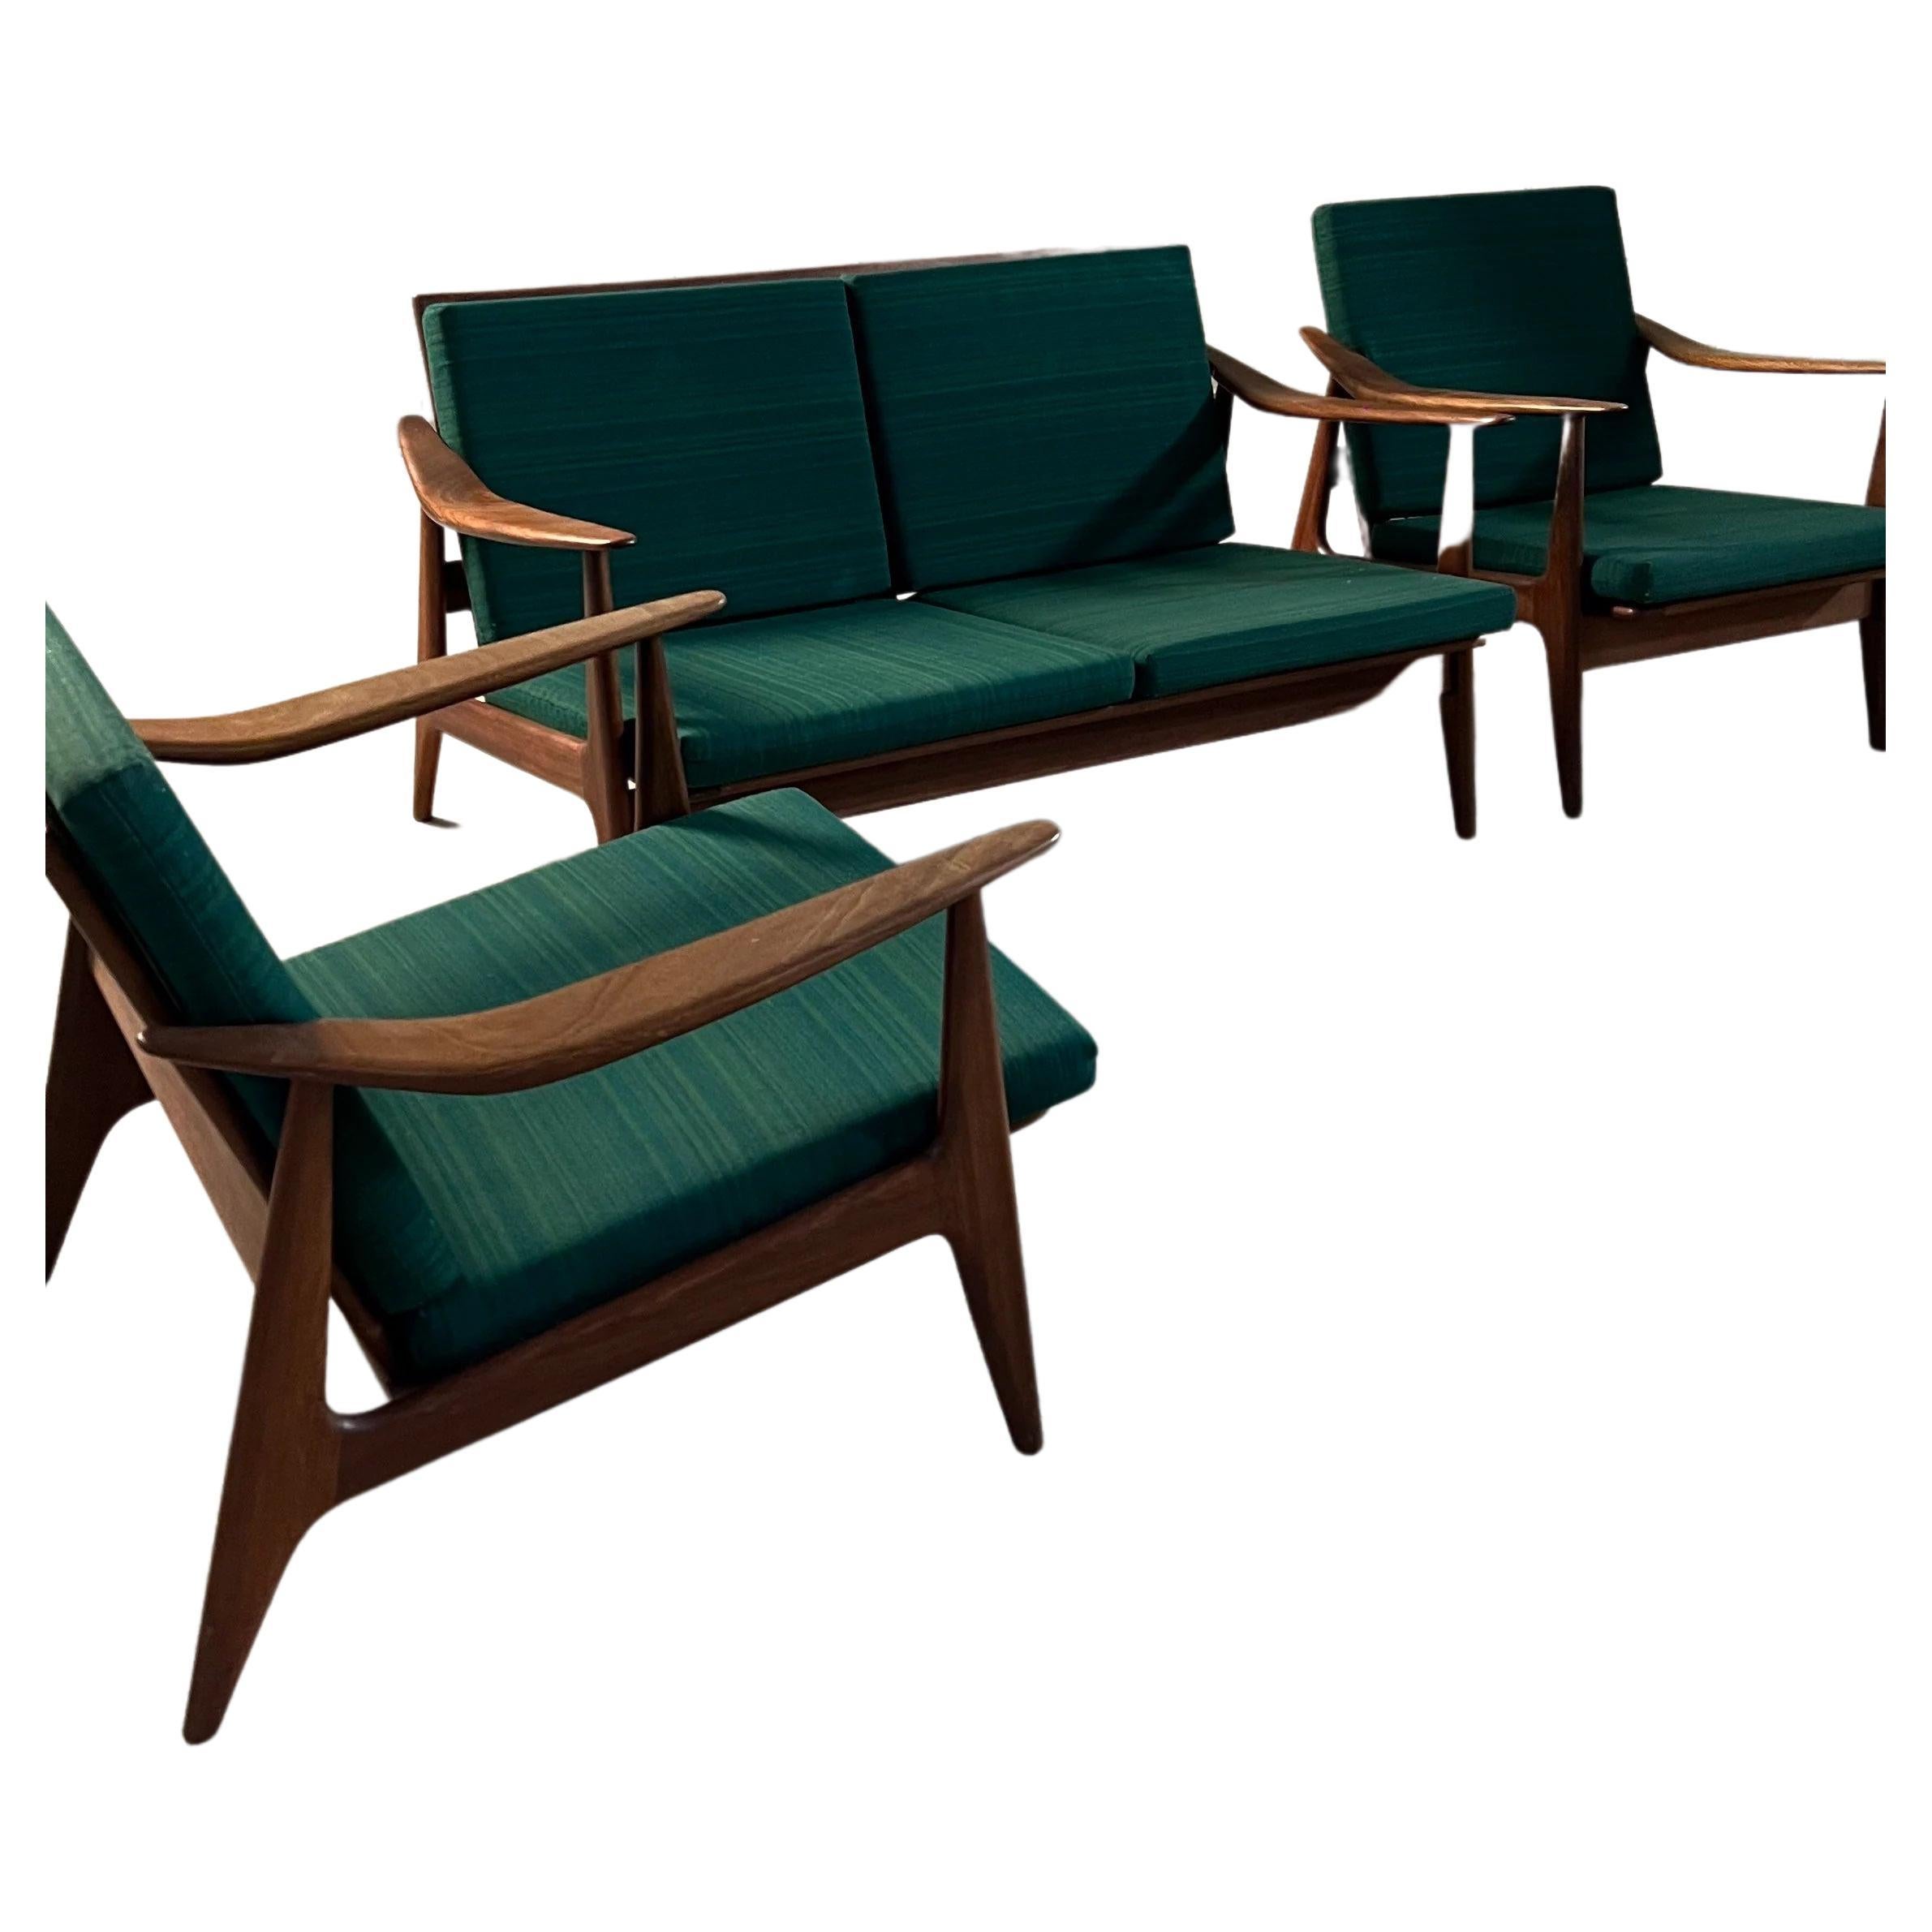 Einzigartige Sofagarnitur von einem unbekannten Designer, im Stil von Hans J. Wegner und Ole Wanscher.

Wir haben diese Garnitur, bestehend aus 1 Sofa und 2 Stühlen, vom Erstbesitzer mit Originalpolsterung gekauft. Die Qualität und das einzigartige